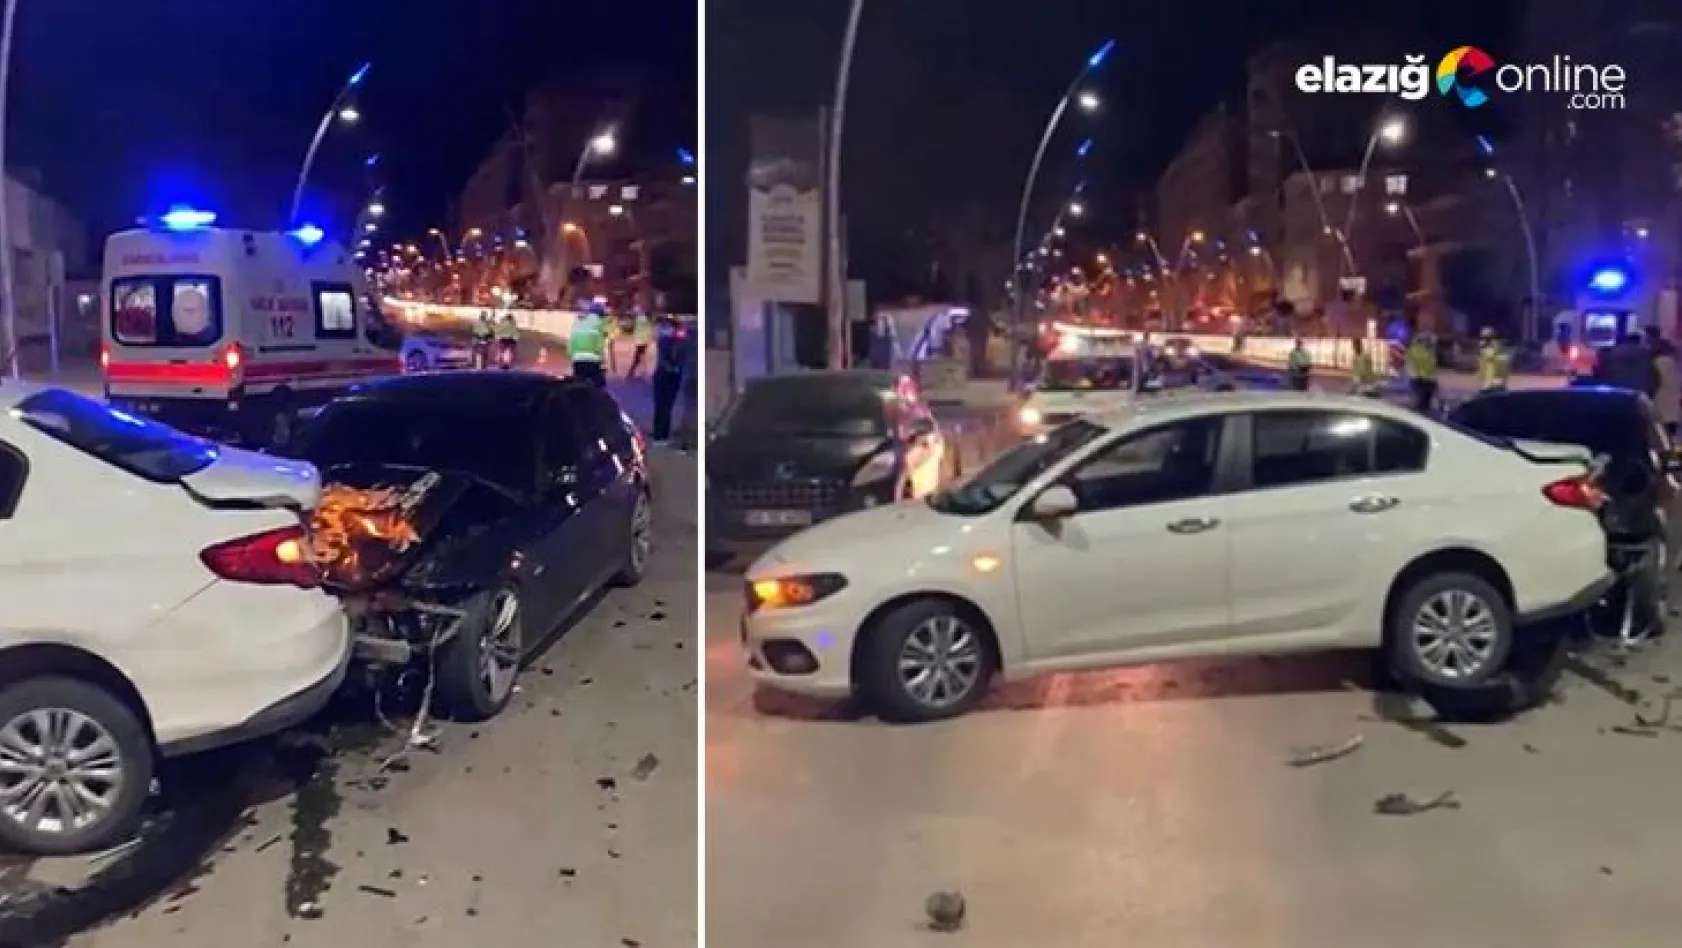 Elazığ Yahya Kemal Caddesi'nde trafik kazası